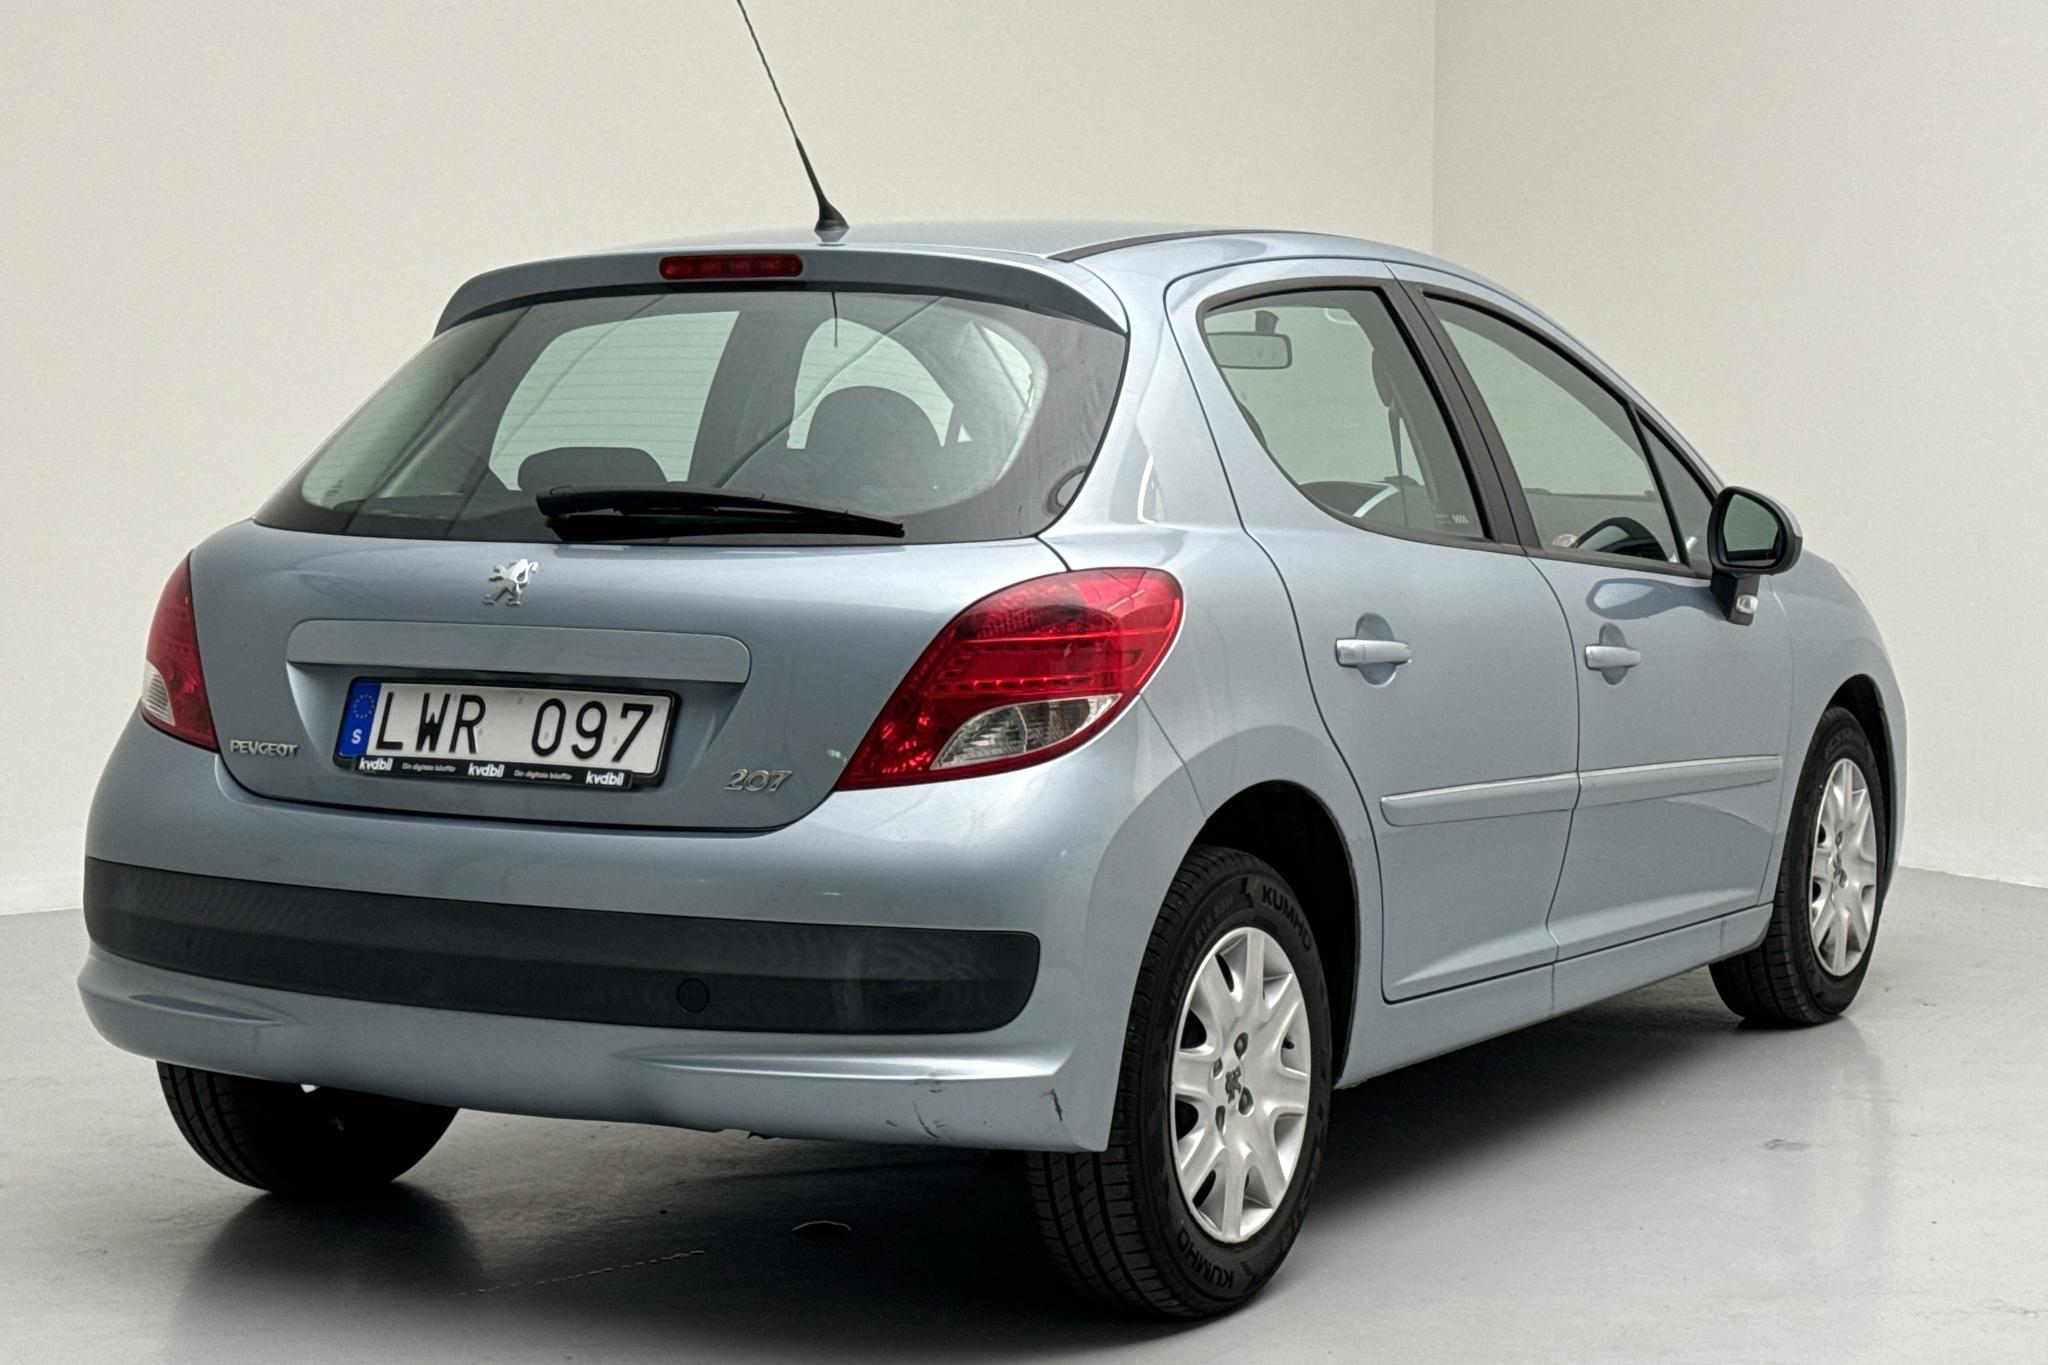 Peugeot 207 1.4 VTi 5dr (95hk) - 69 830 km - Manual - Light Blue - 2011